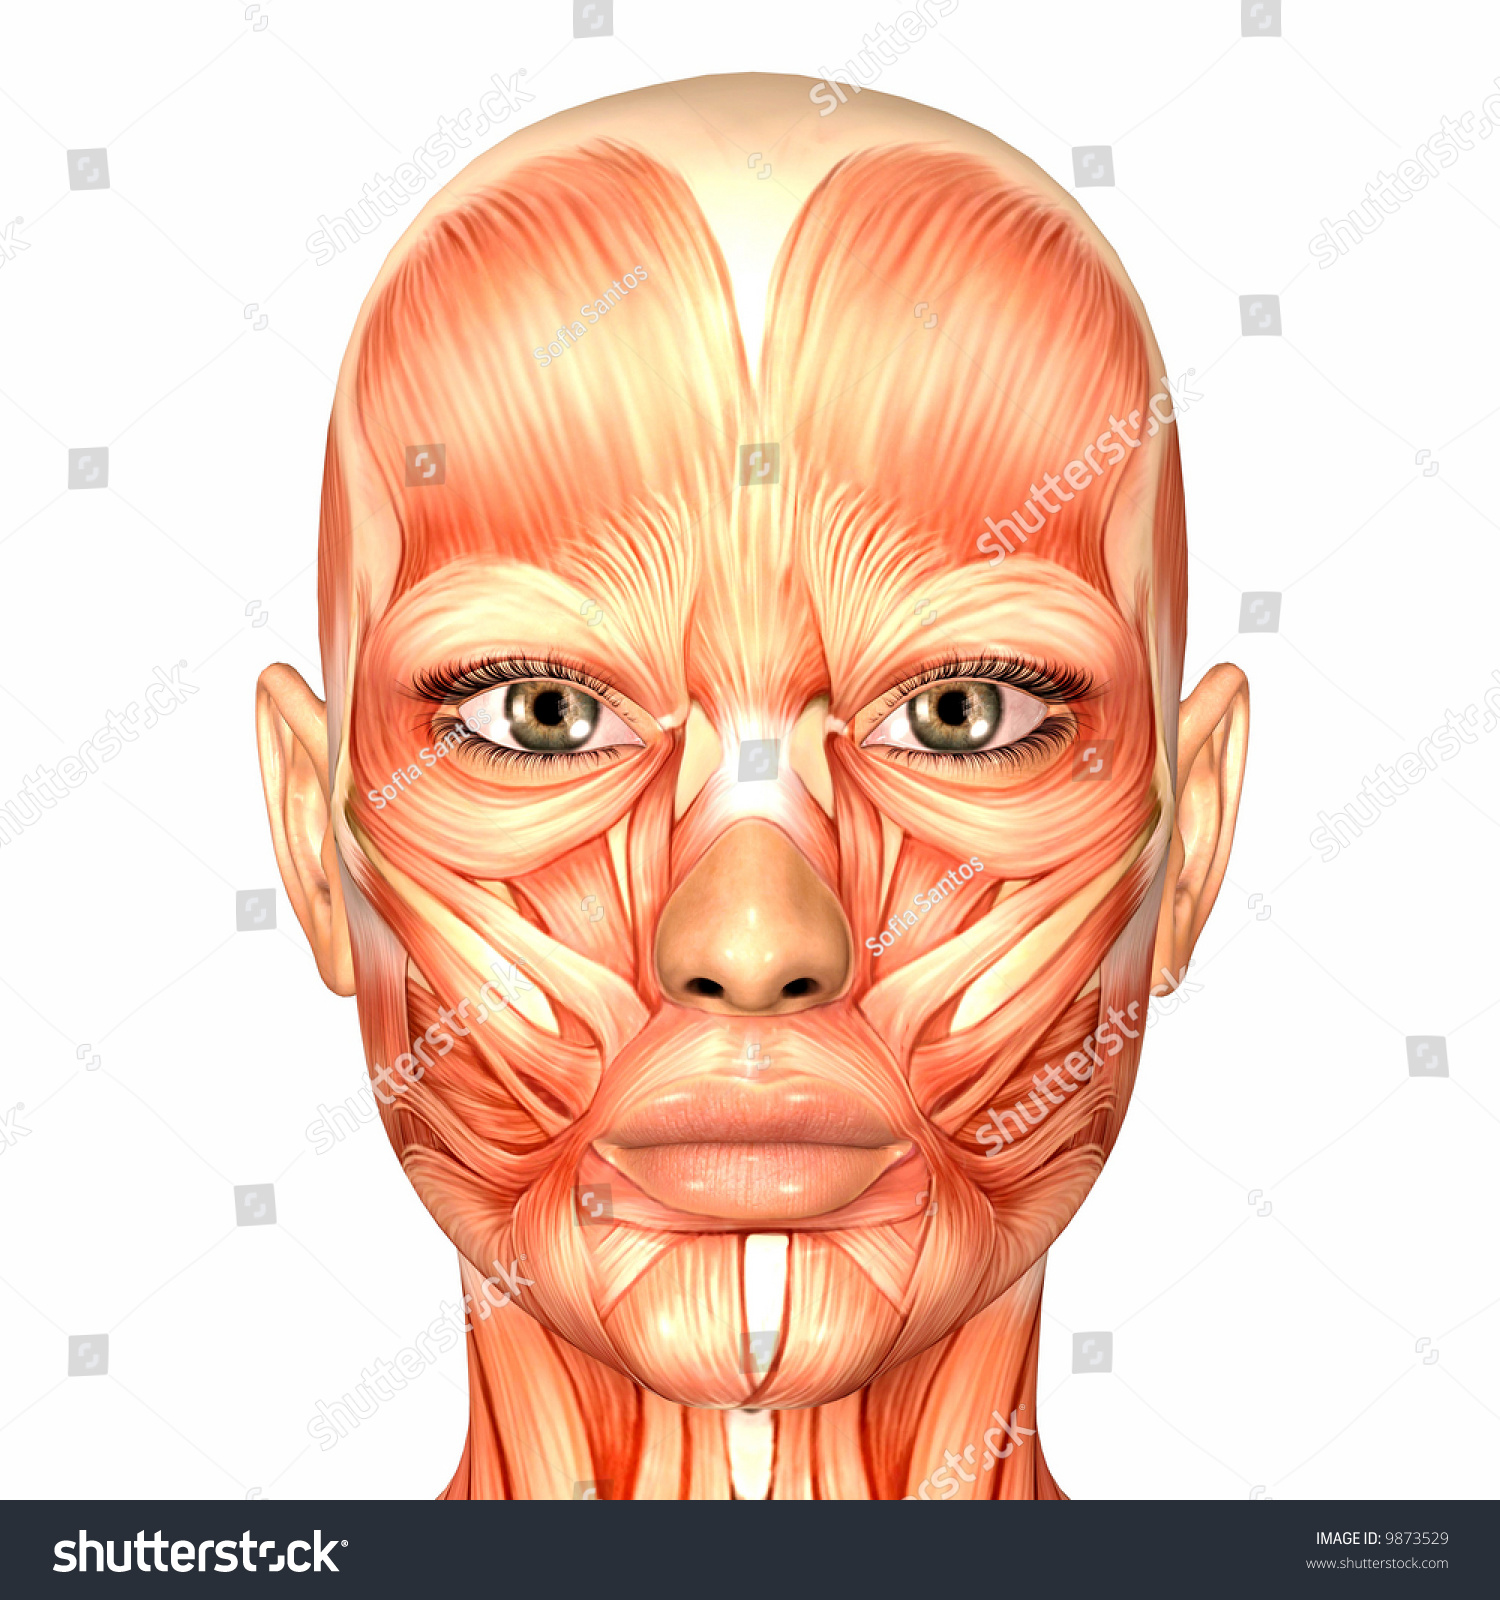 Pin en anatomy face